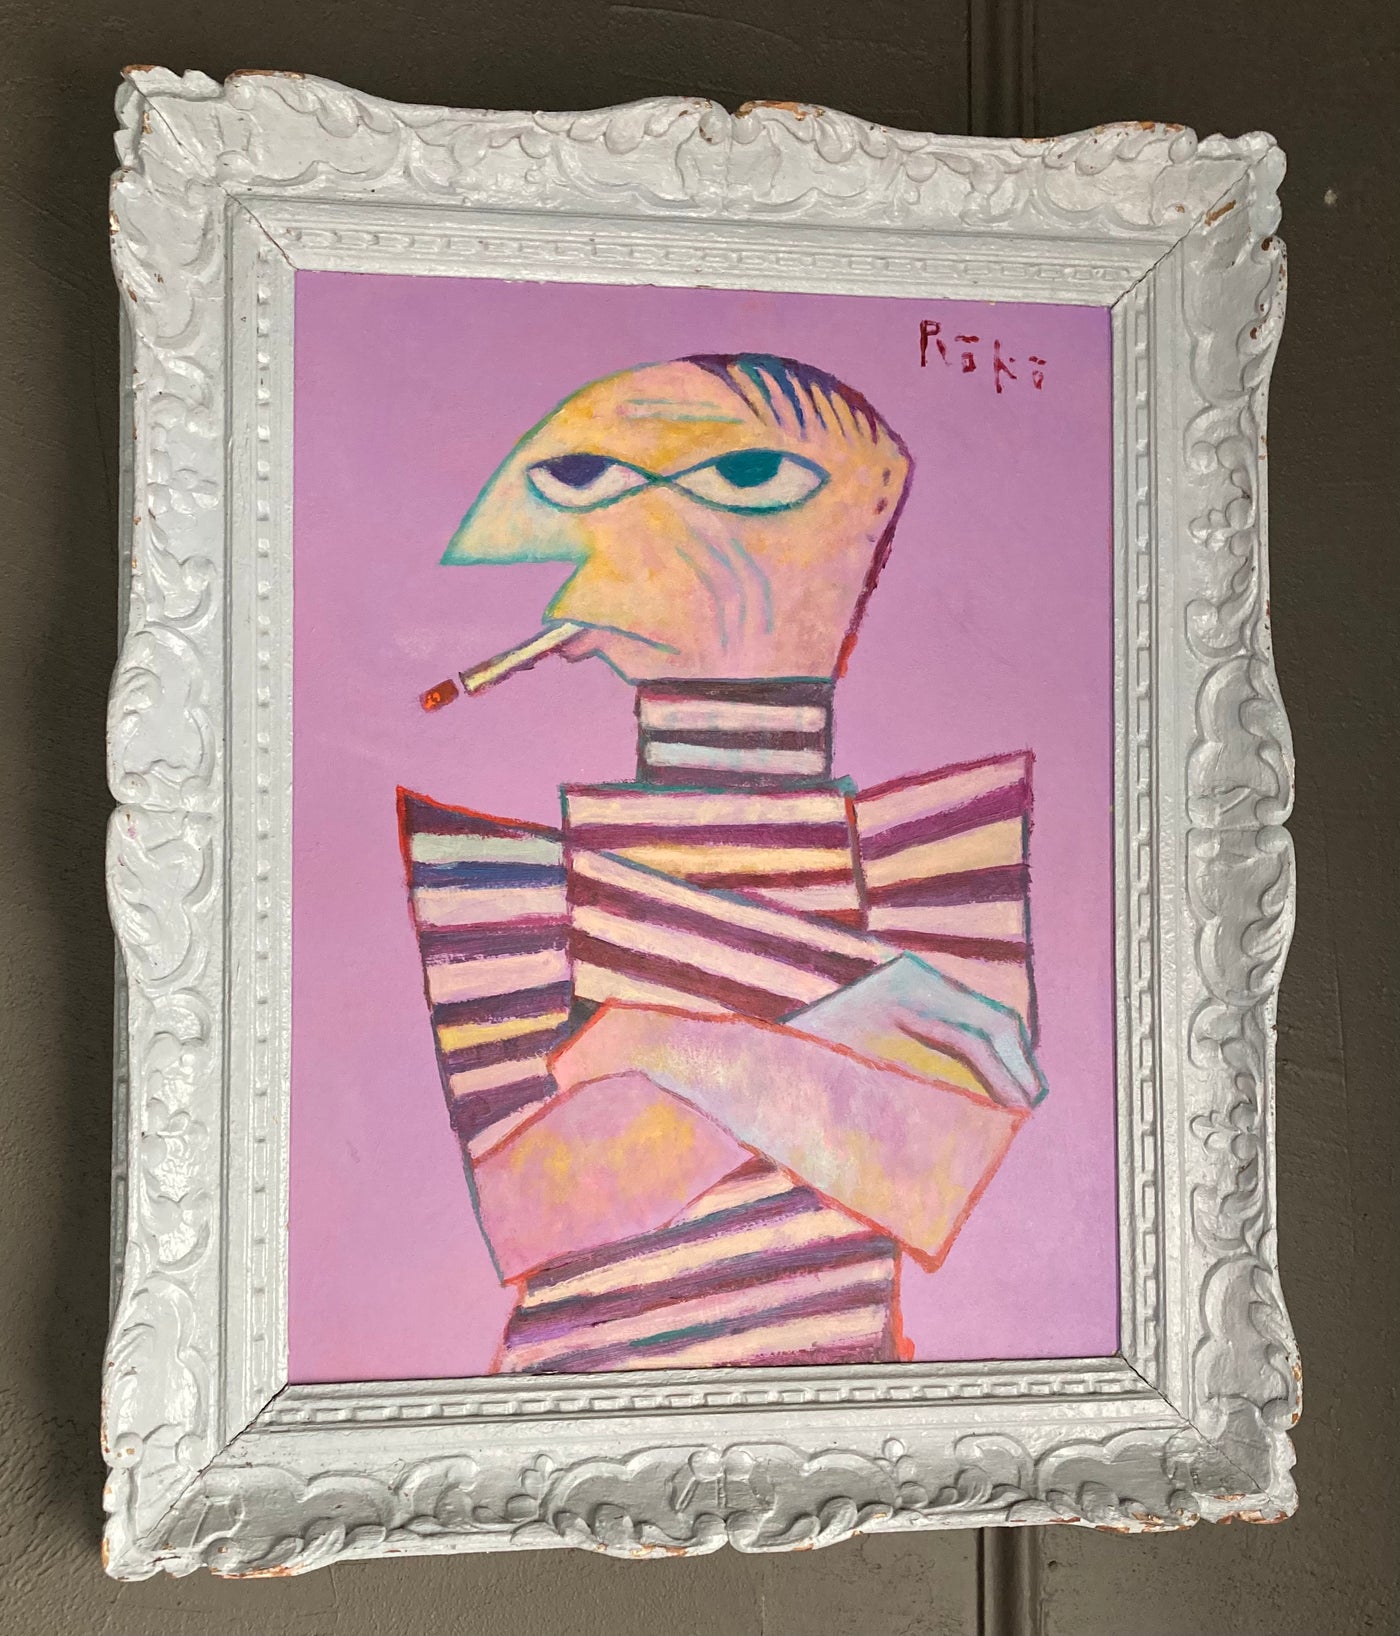 Rose Period Cubed (Picasso)